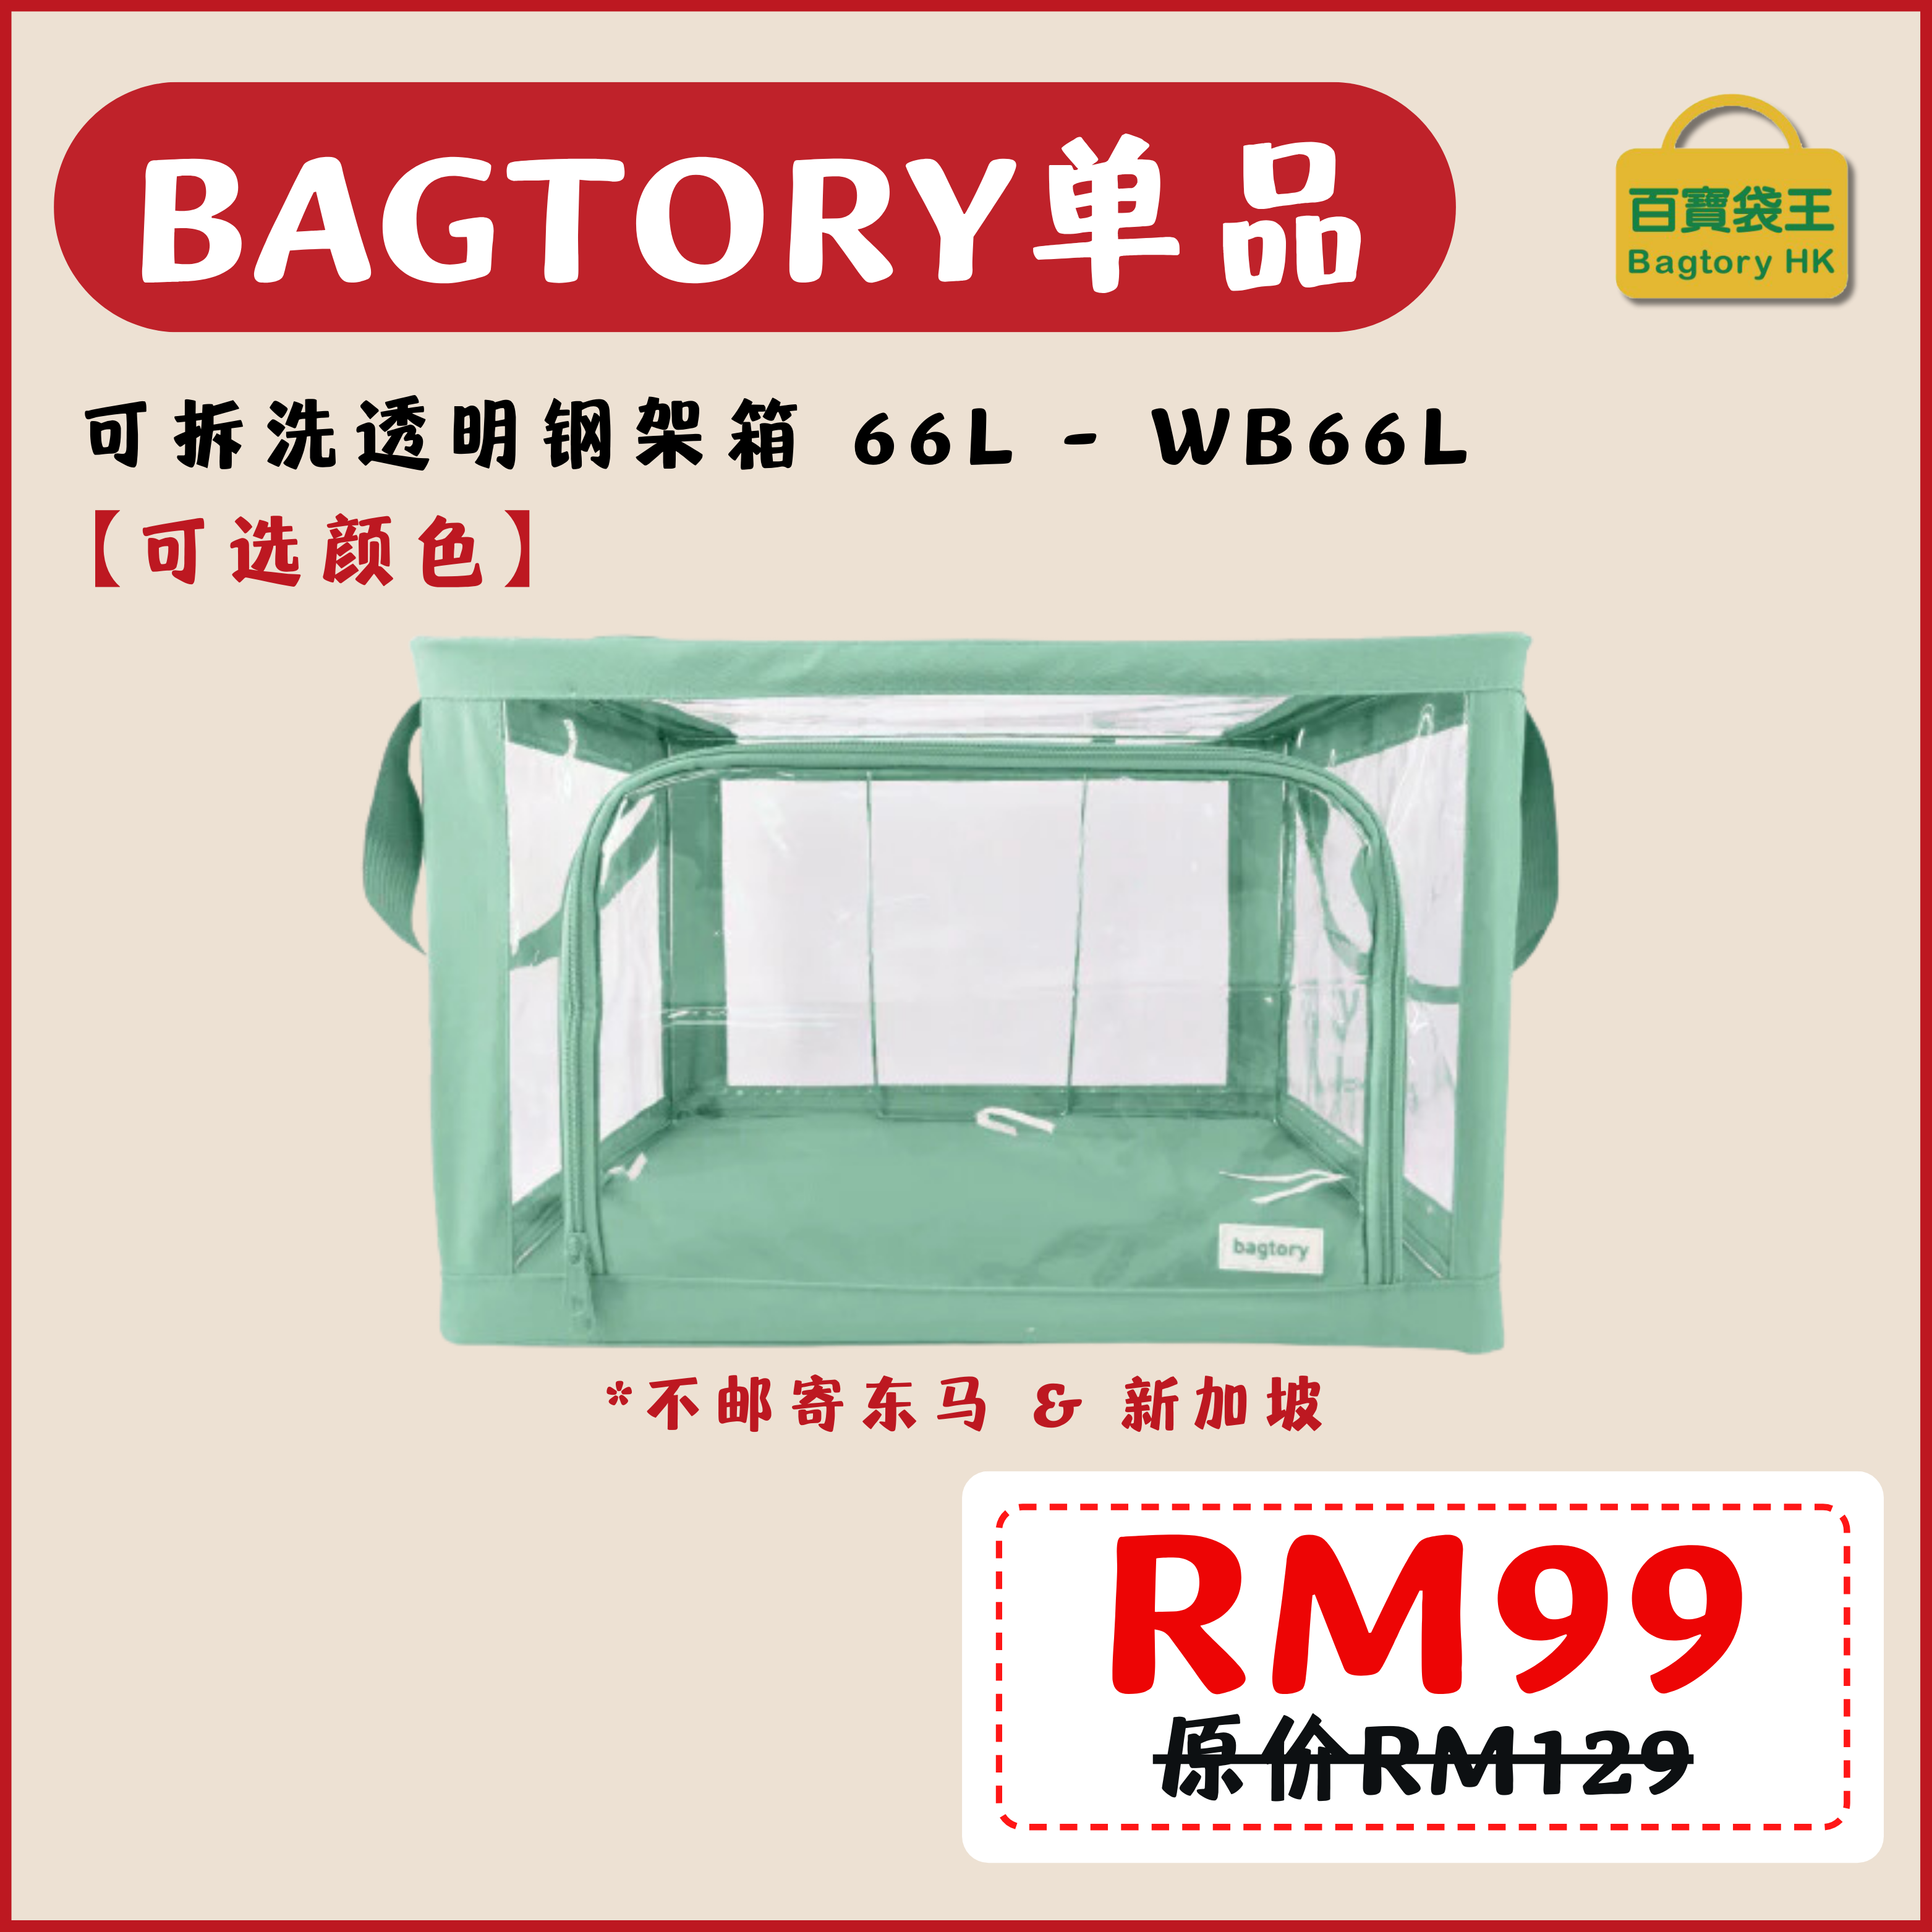 2702【不邮寄东马和新加坡地区】BAGTORY WB66L 可拆洗透明钢架箱 66L (1入)